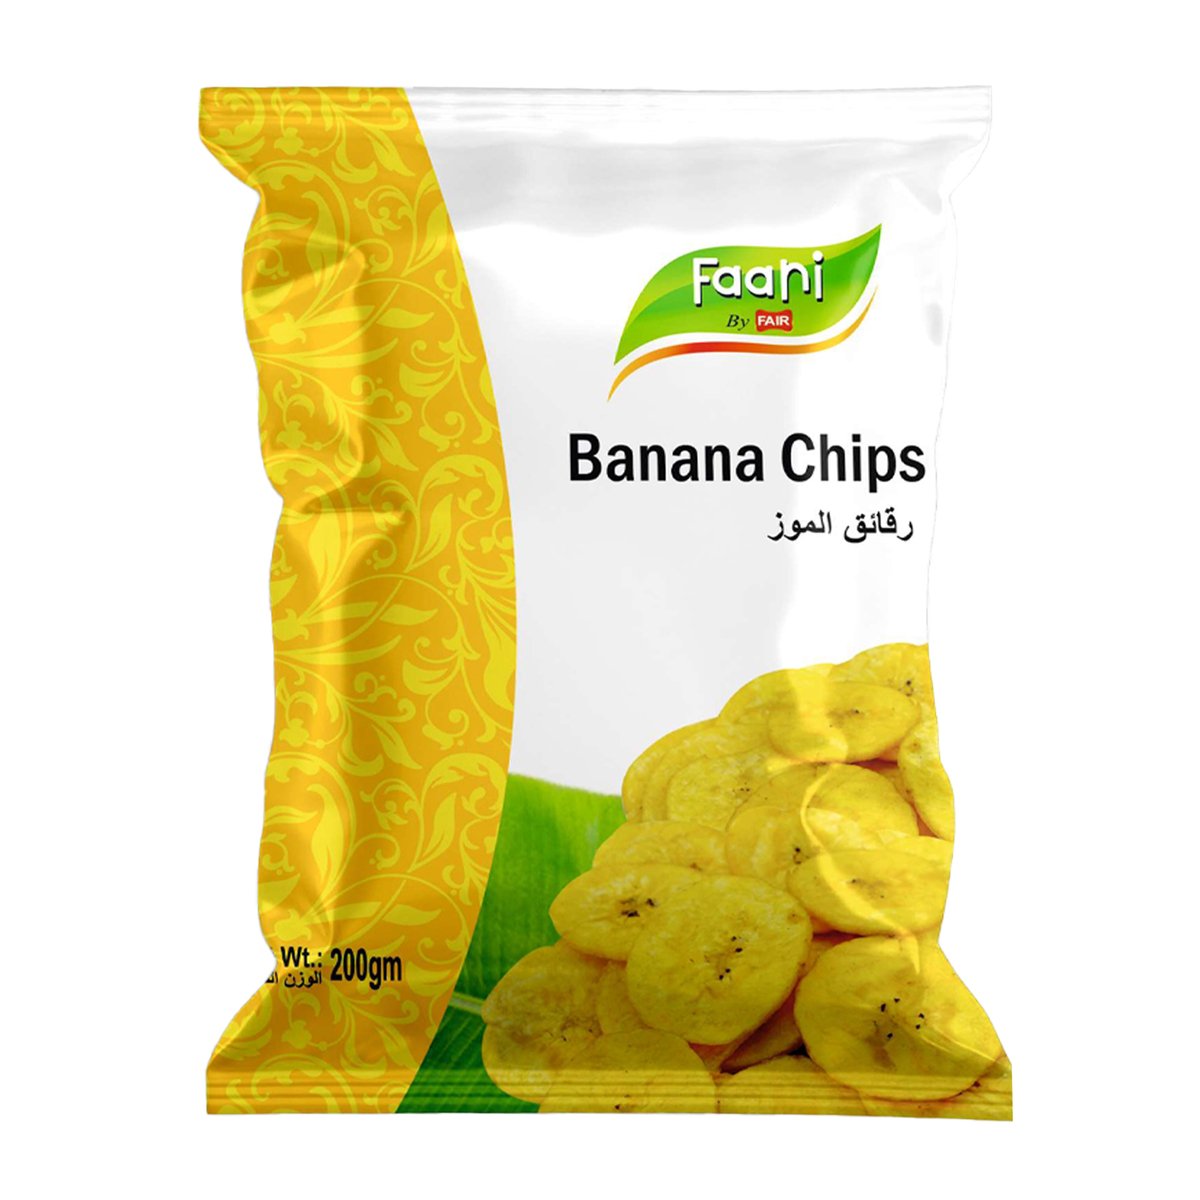 Faani Banana Chips 200 g